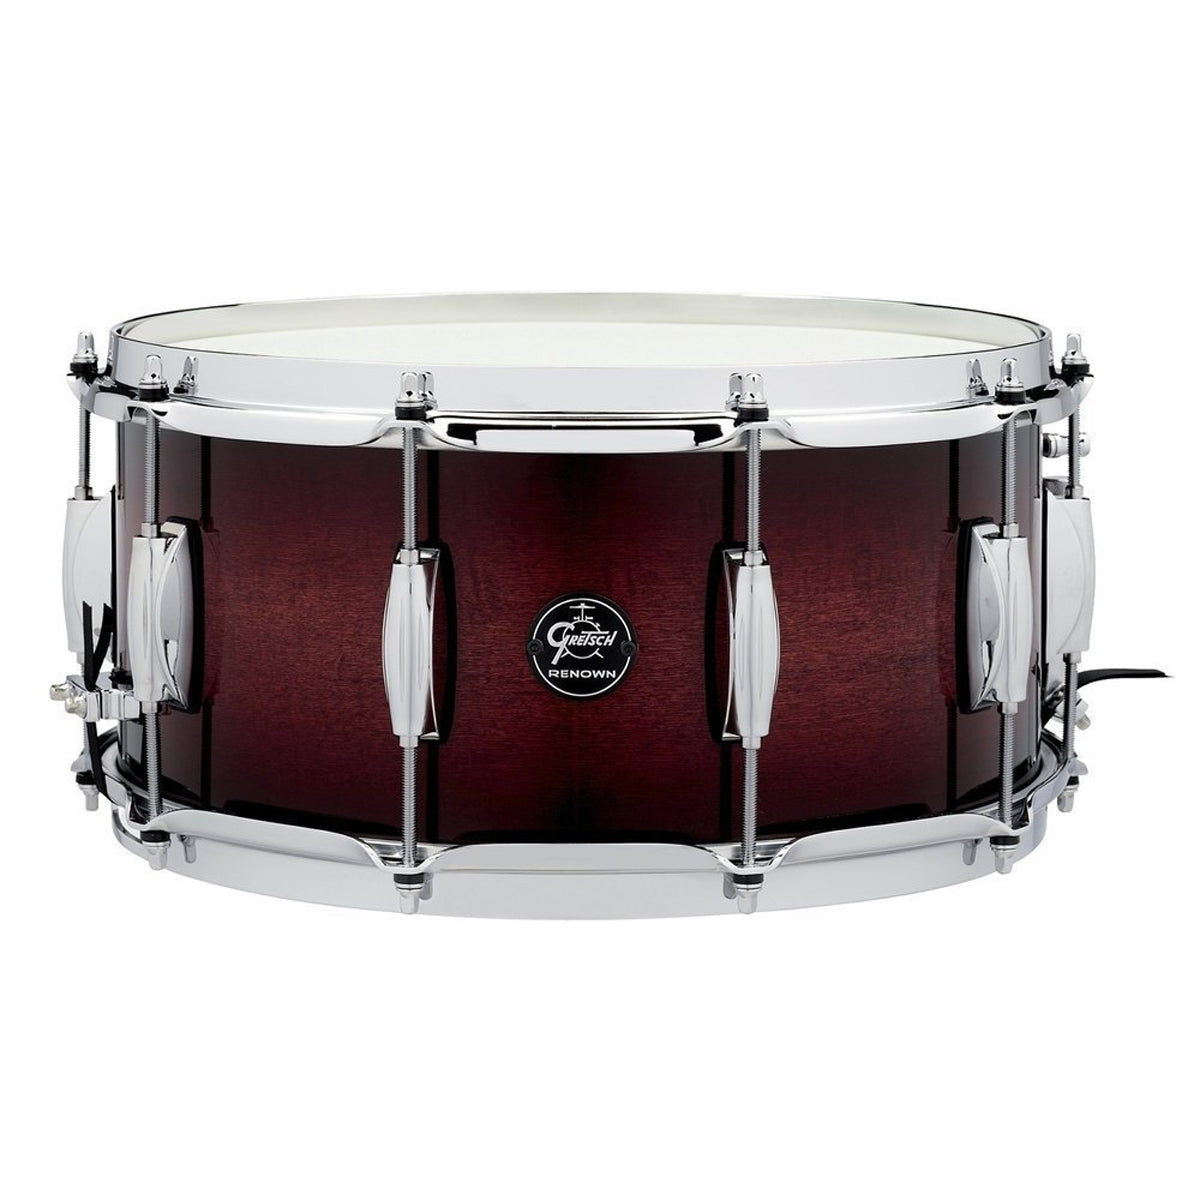 Gretsch Renown Maple 14"x6.5" Snare Drum in Cherry Burst